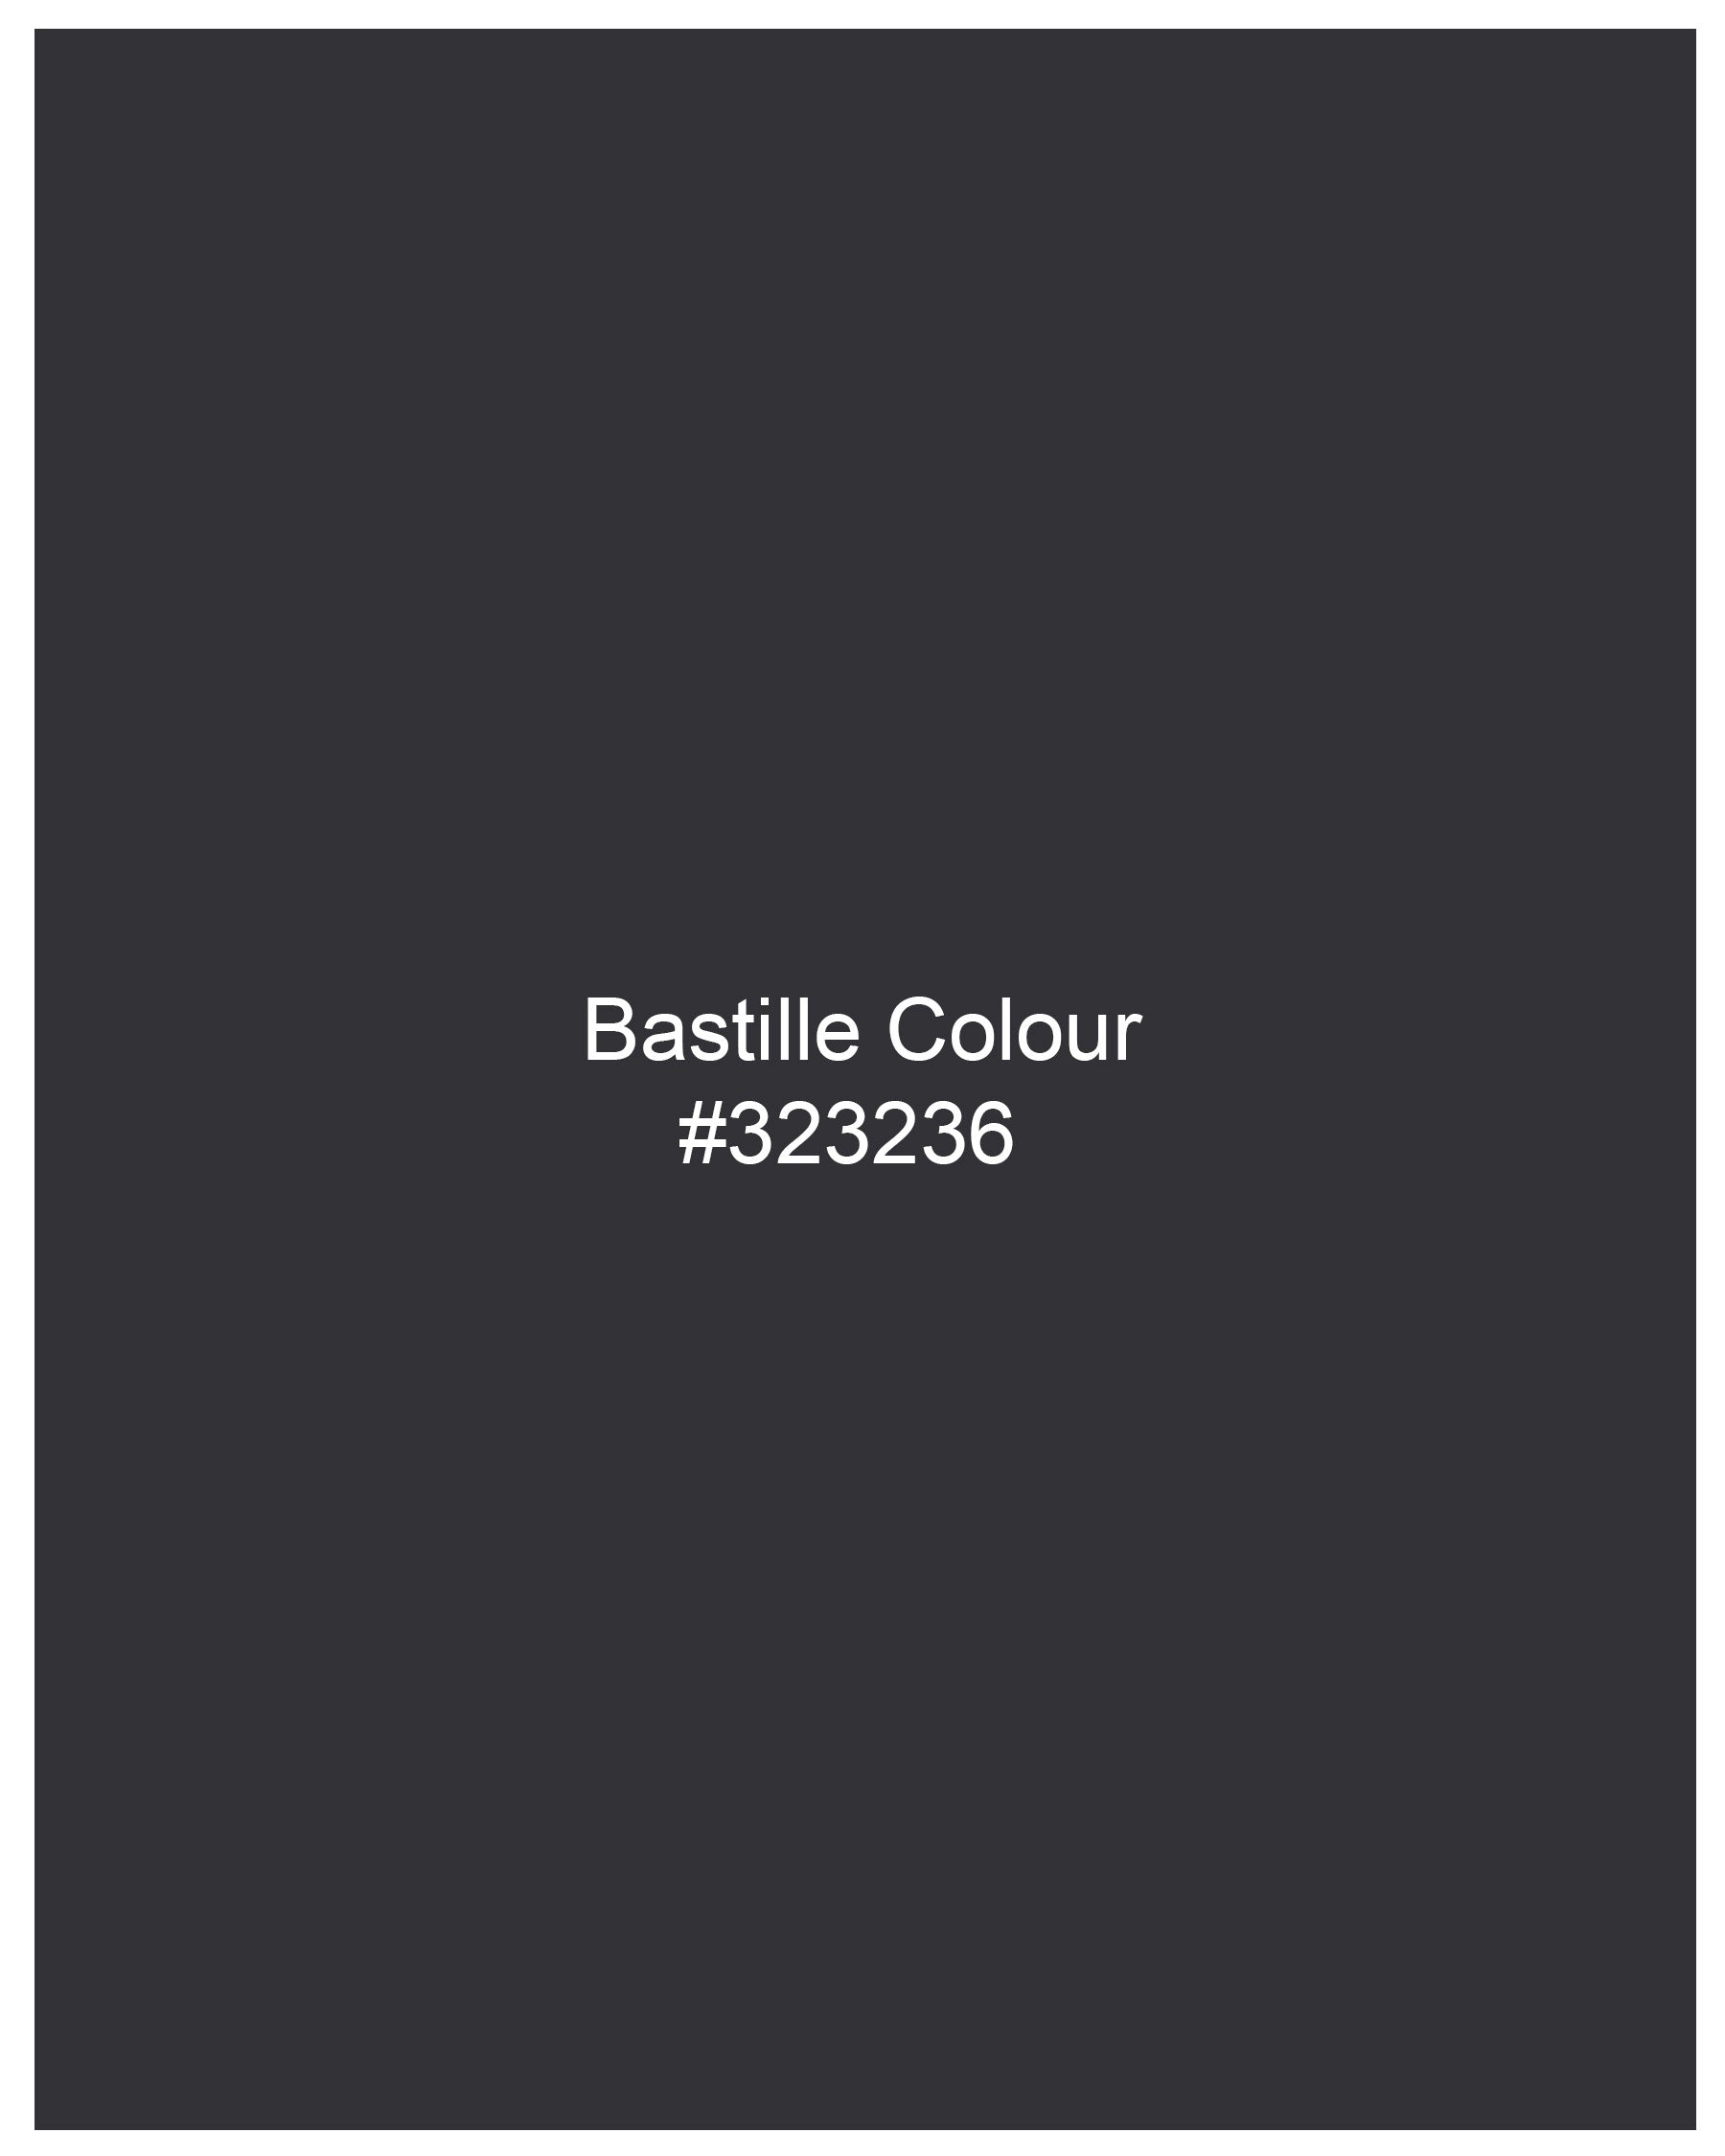 Bastille Light Black Windowpane Pant T2097-28, T2097-30, T2097-32, T2097-34, T2097-36, T2097-38, T2097-40, T2097-42, T2097-44